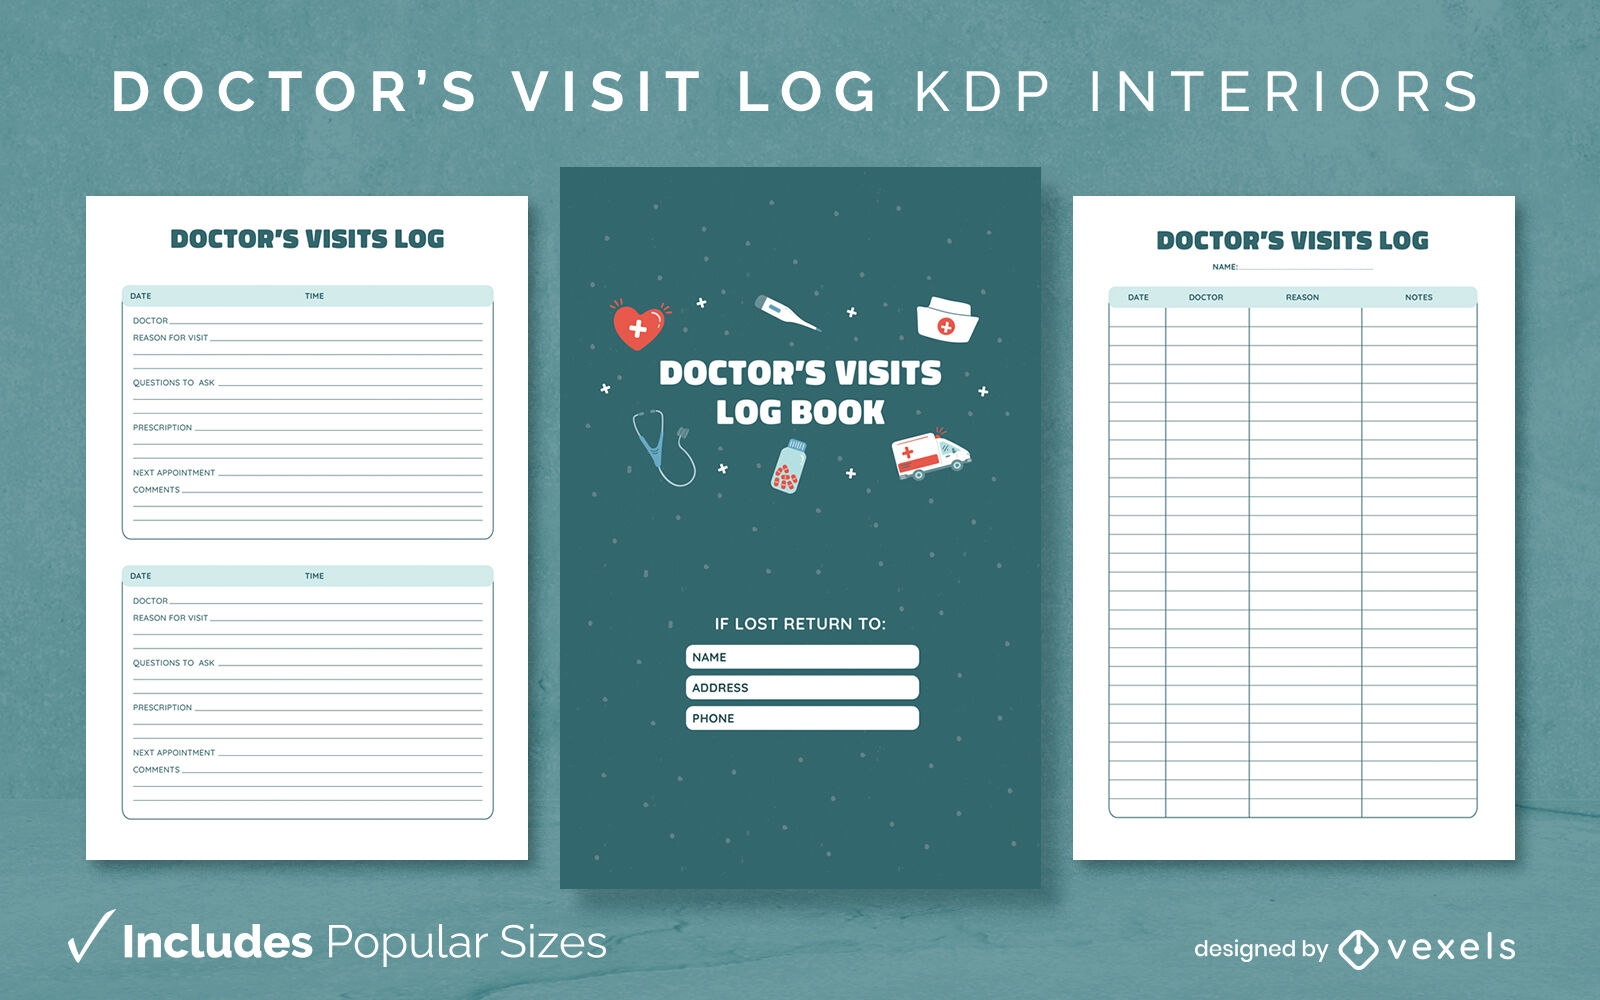 Registro de visitas al médico kdp diseño de interiores.